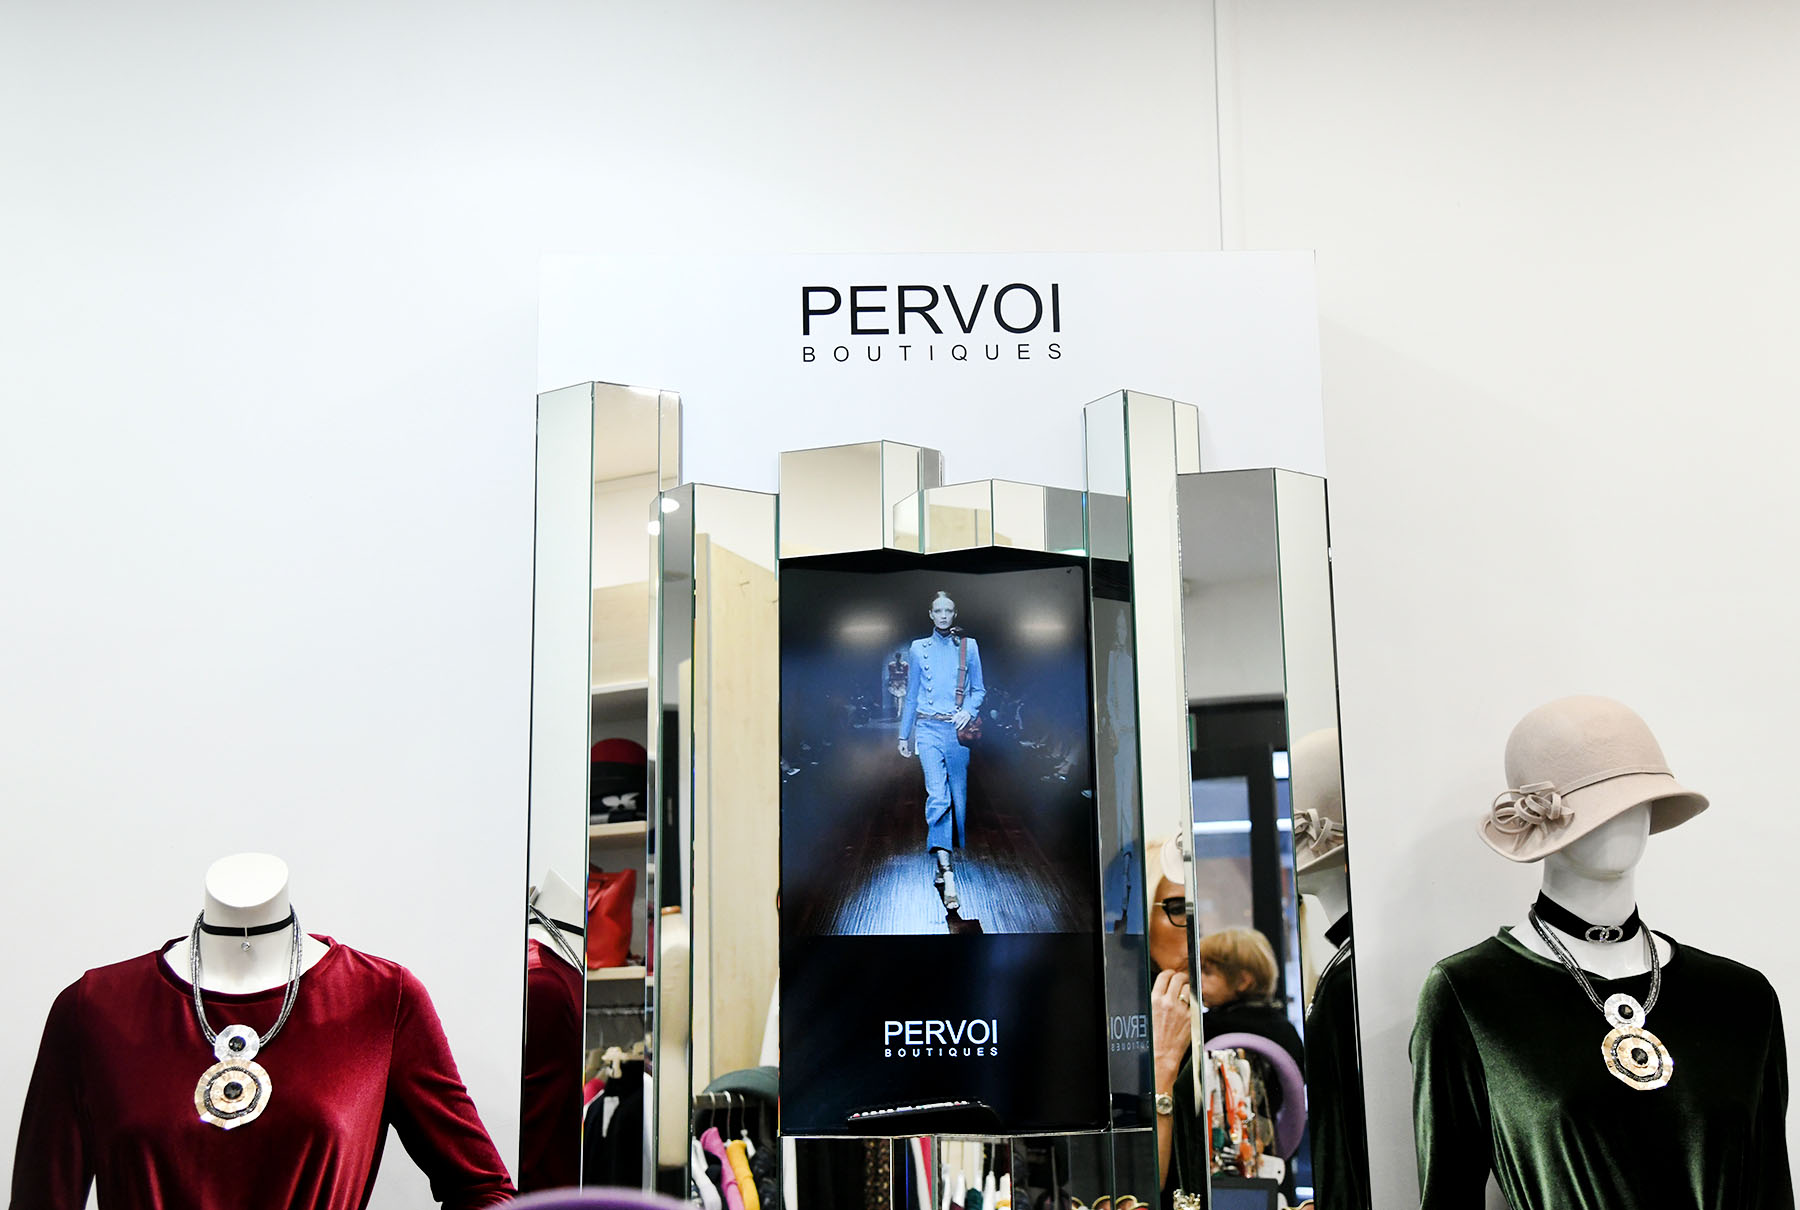 Pervoi - zagrebački dom vrhunske talijanske kvalitete